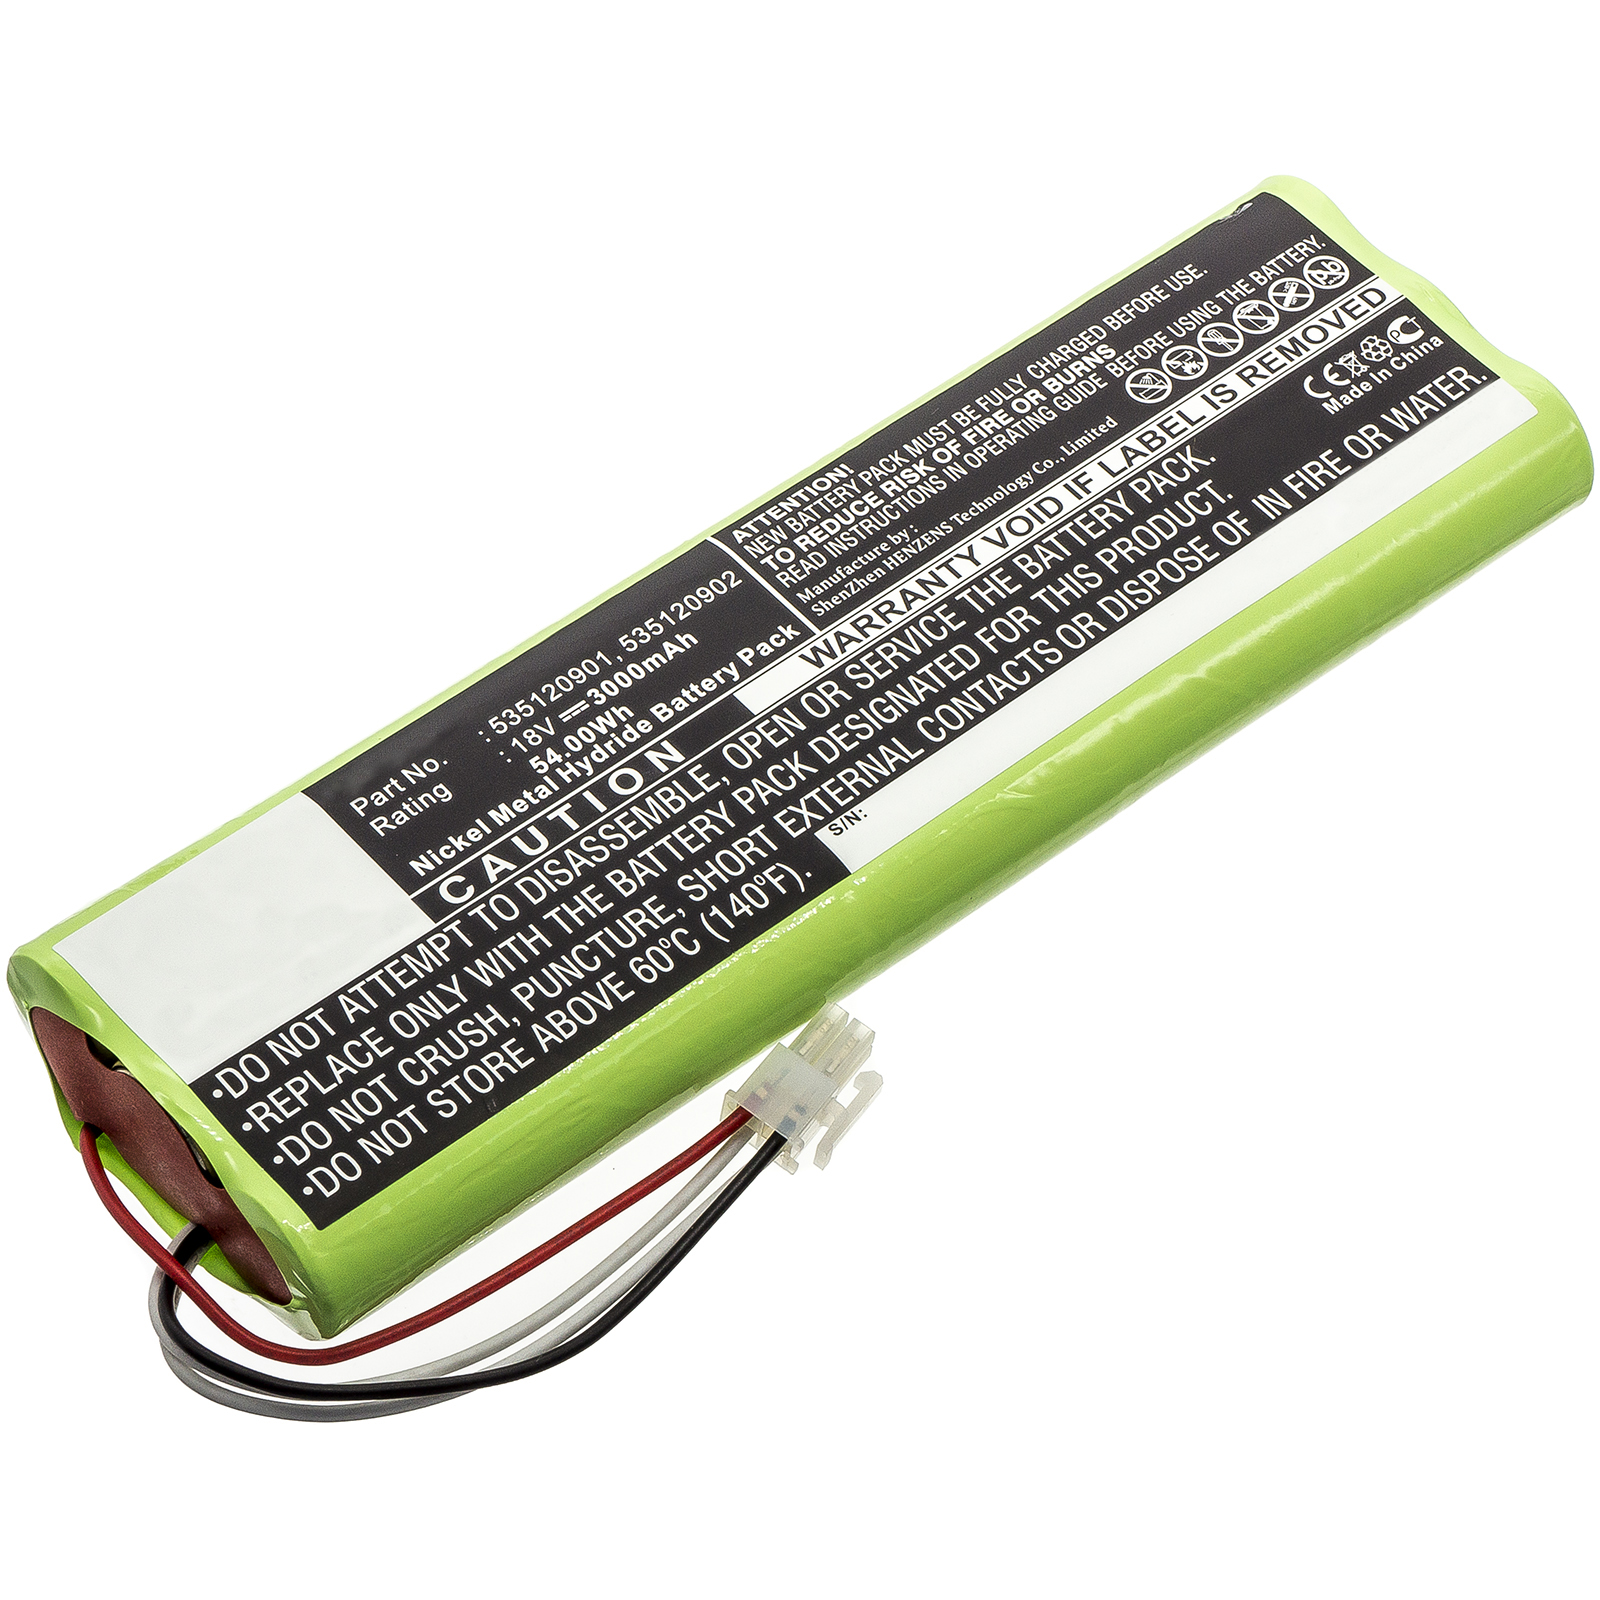 Batteries for GardenaLawn Mower